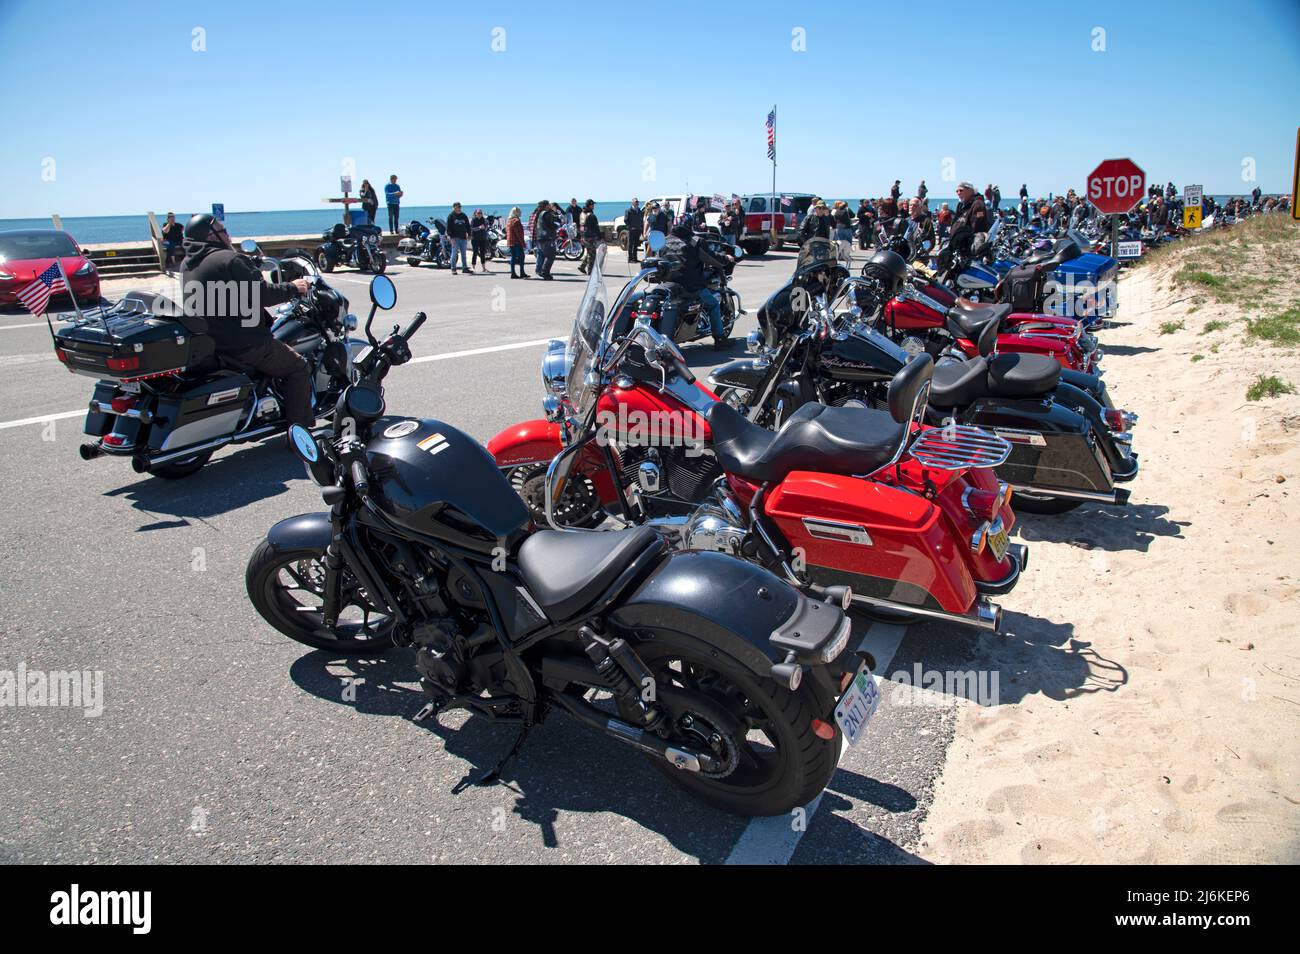 Segen der Fahrräder - West Dennis Beach (Cape Cod). Fahrräder standen für die Veranstaltung bereit Stockfoto